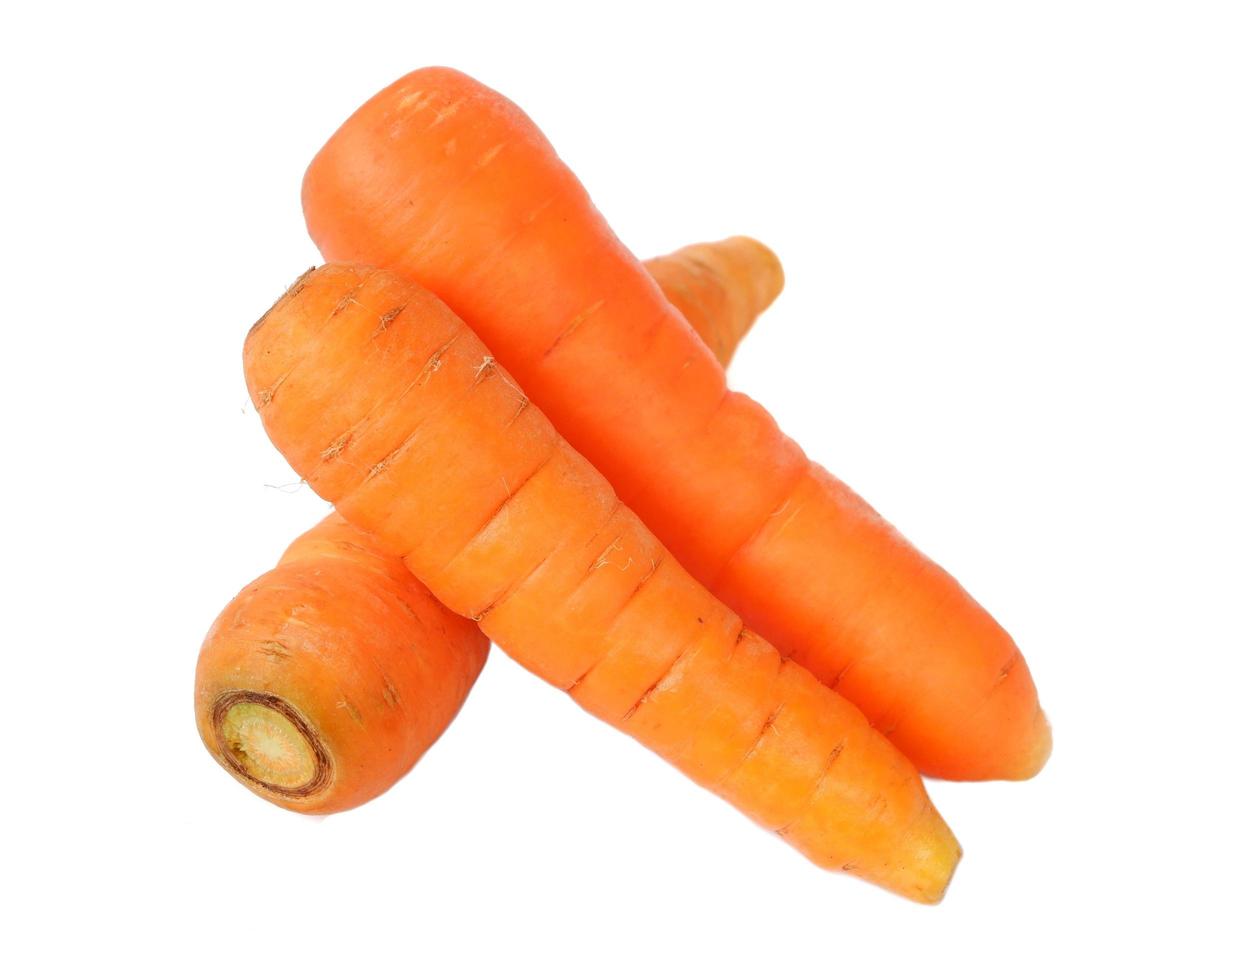 zanahoria aislado sobre fondo blanco foto